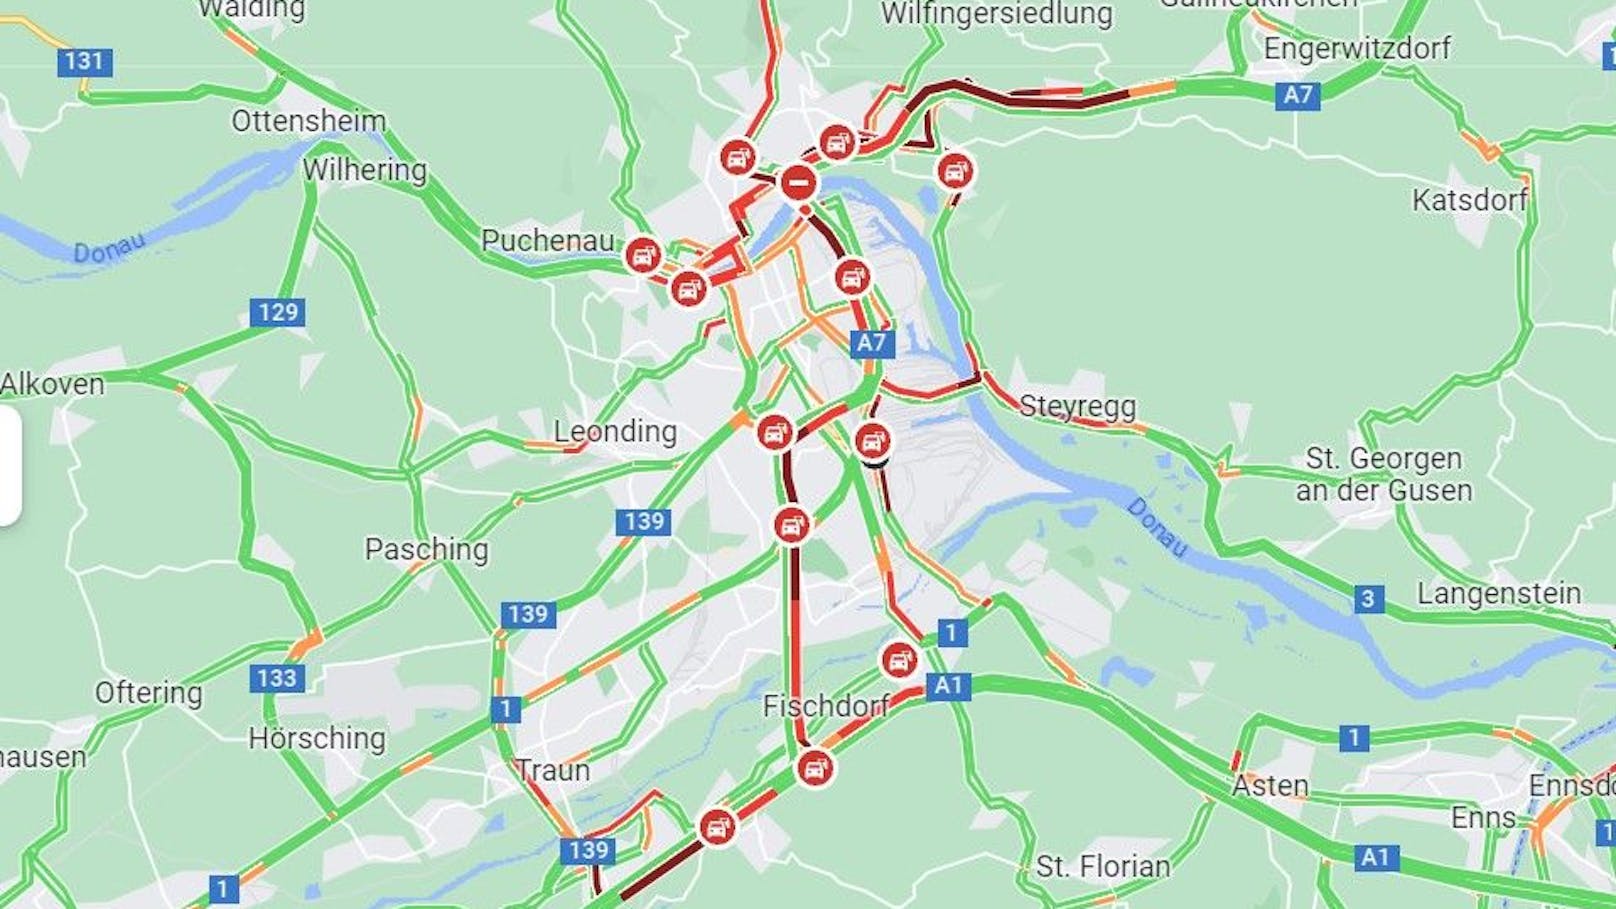 Das Google-Bild von 8.15 Uhr zeigt Verkehrsprobleme (rote Einfärbung) in der ganzen Stadt, vor allem an den Hauptverkehrsadern.